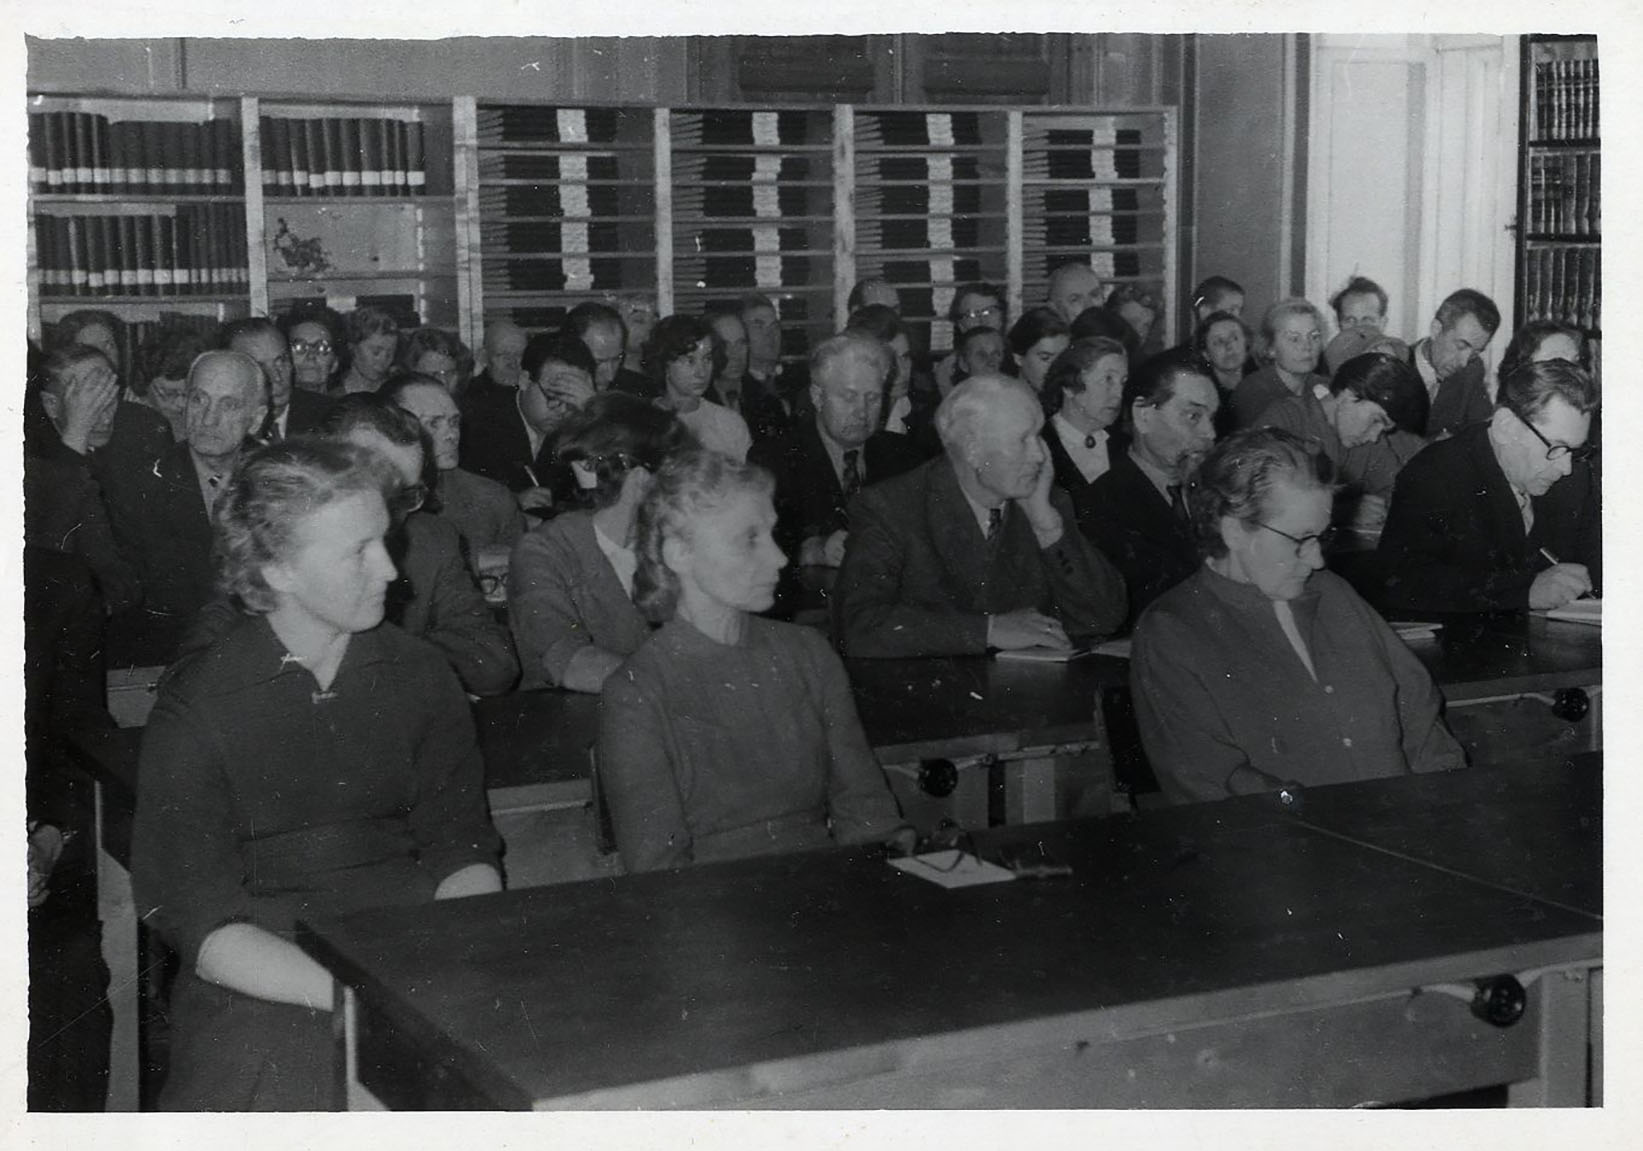 Esimene konverents toimus arhiivraamatukogu saalis 1961